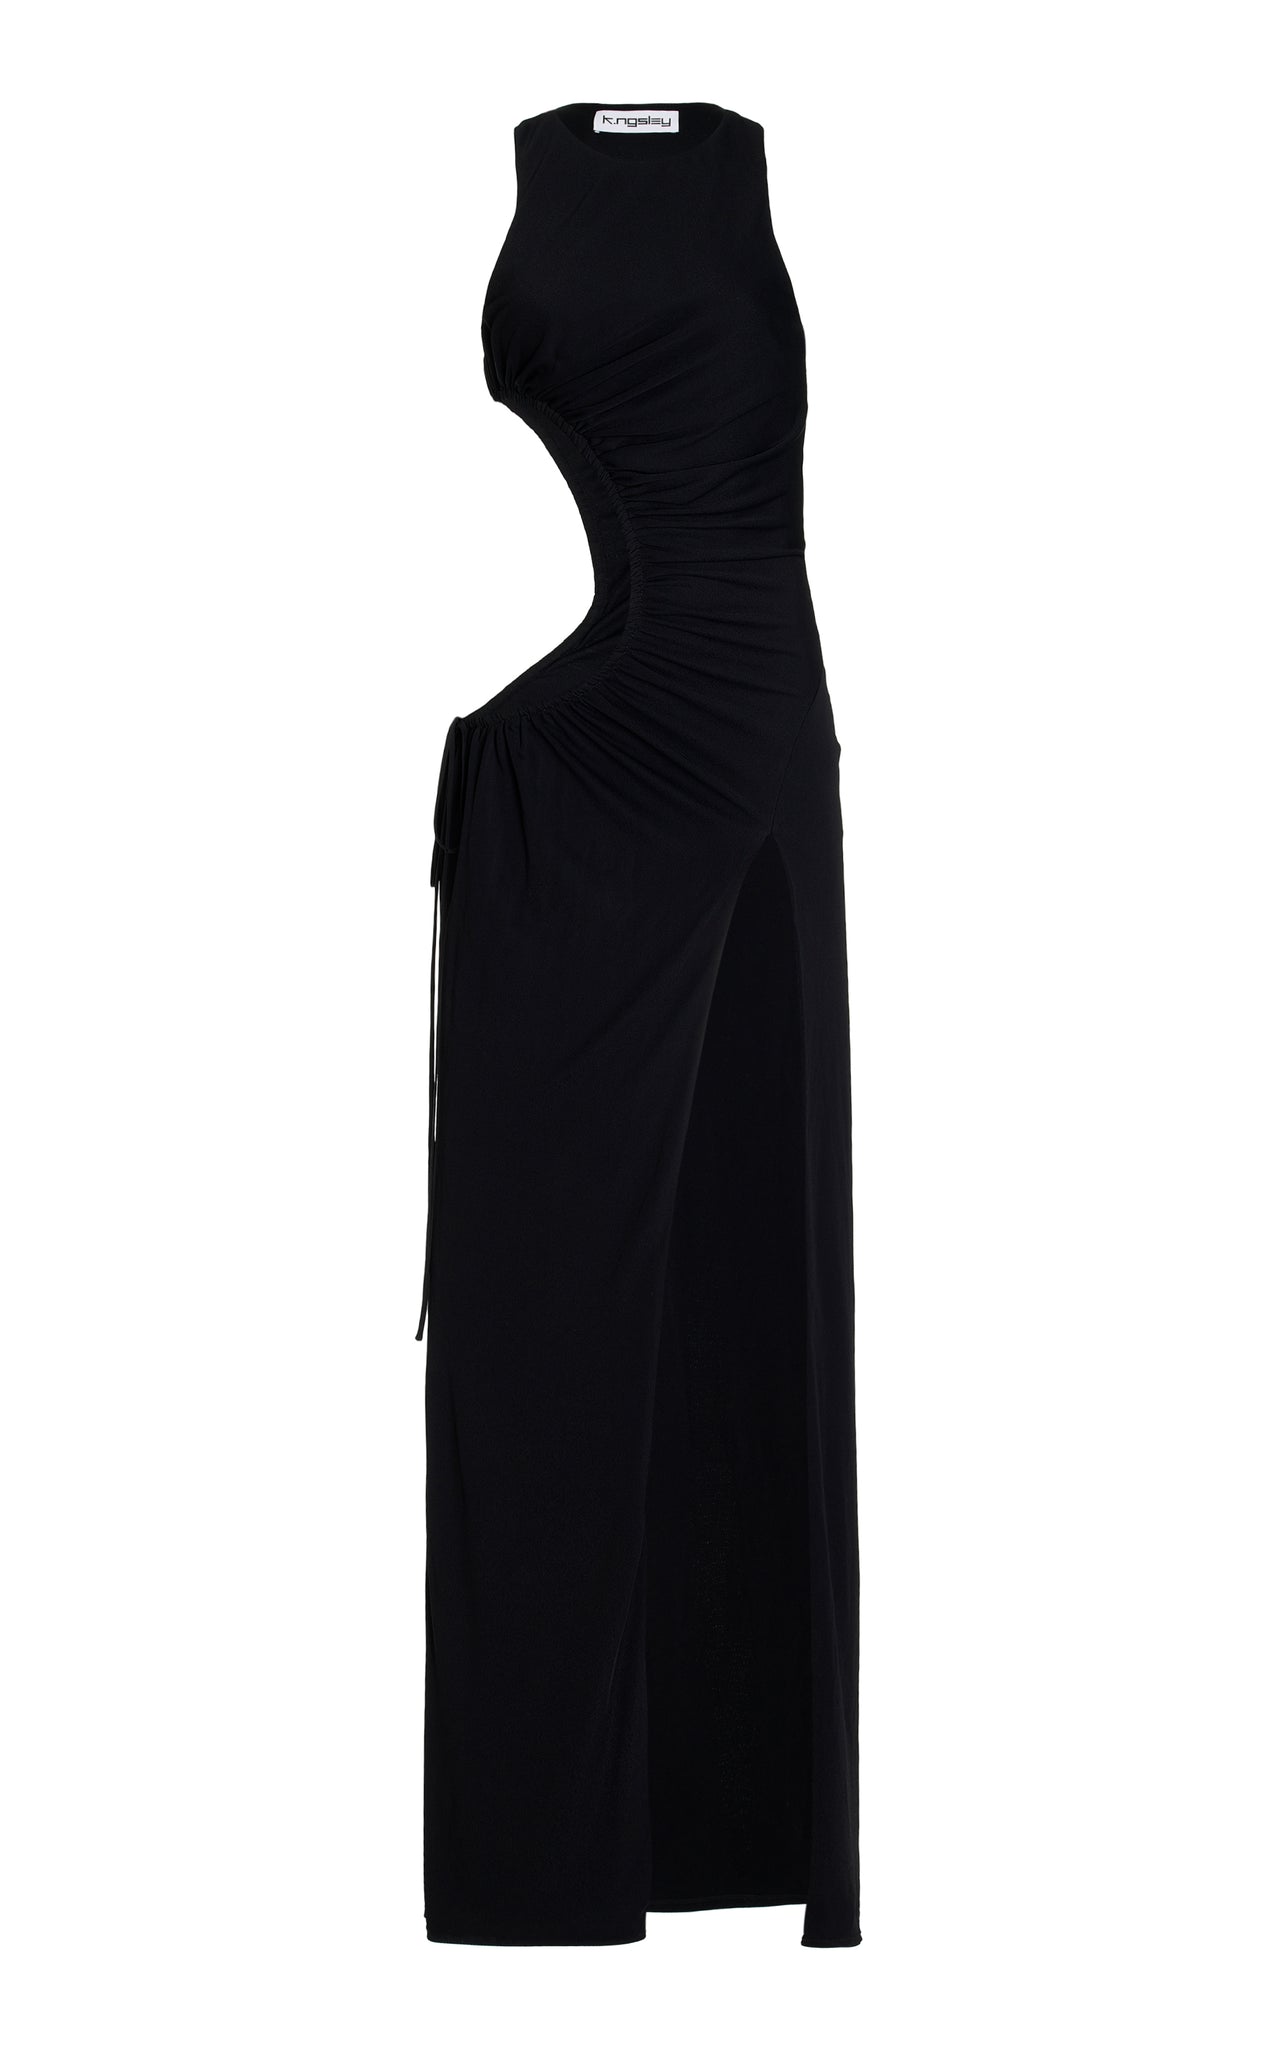 Black "Chérie" Dress